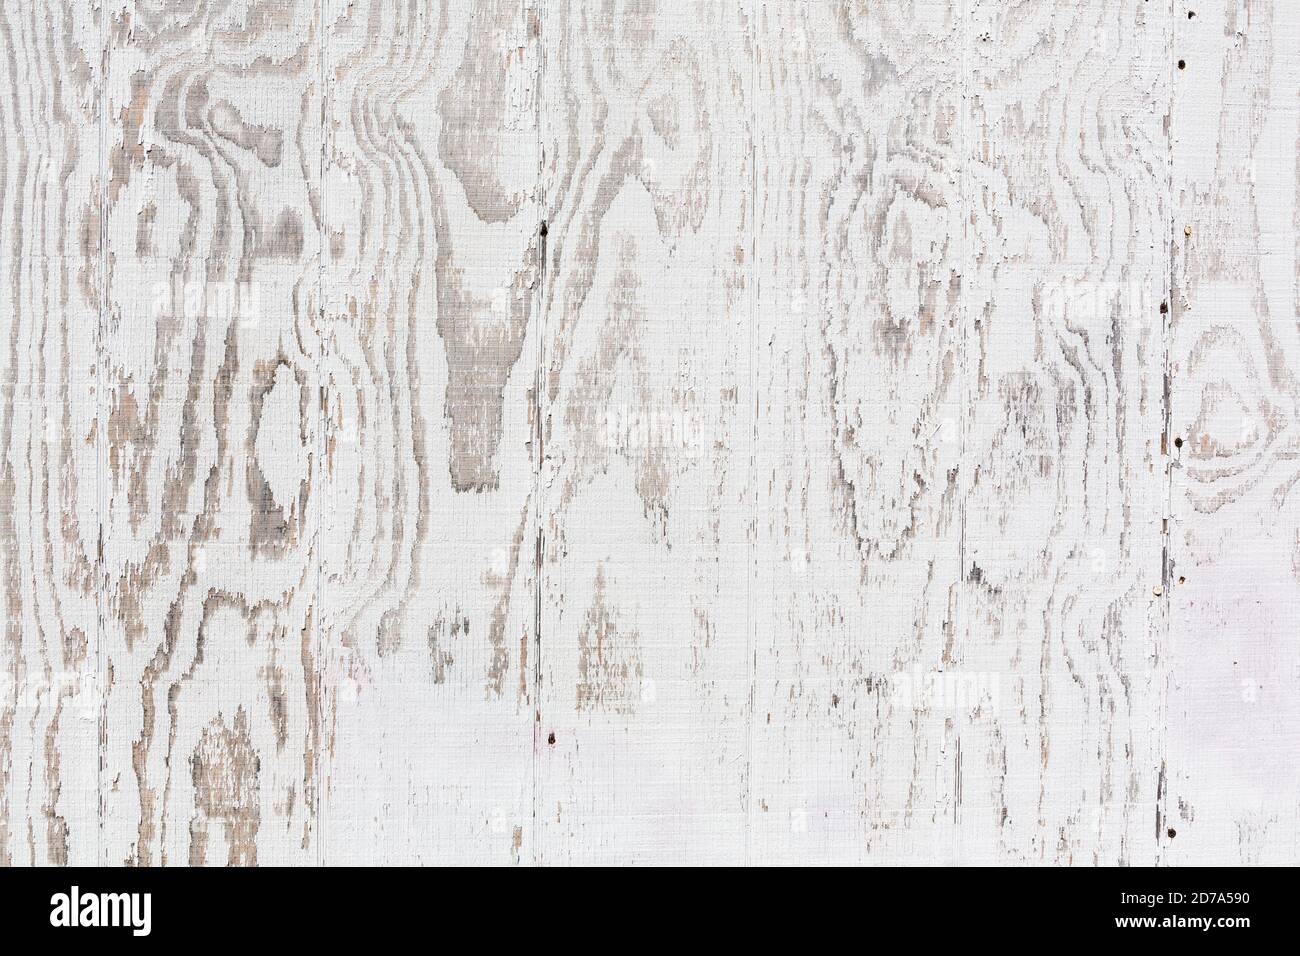 Vista cercana de la superficie de una pared exterior de madera contrachapada pintada de blanco que se desvanece con el tiempo. Foto de stock